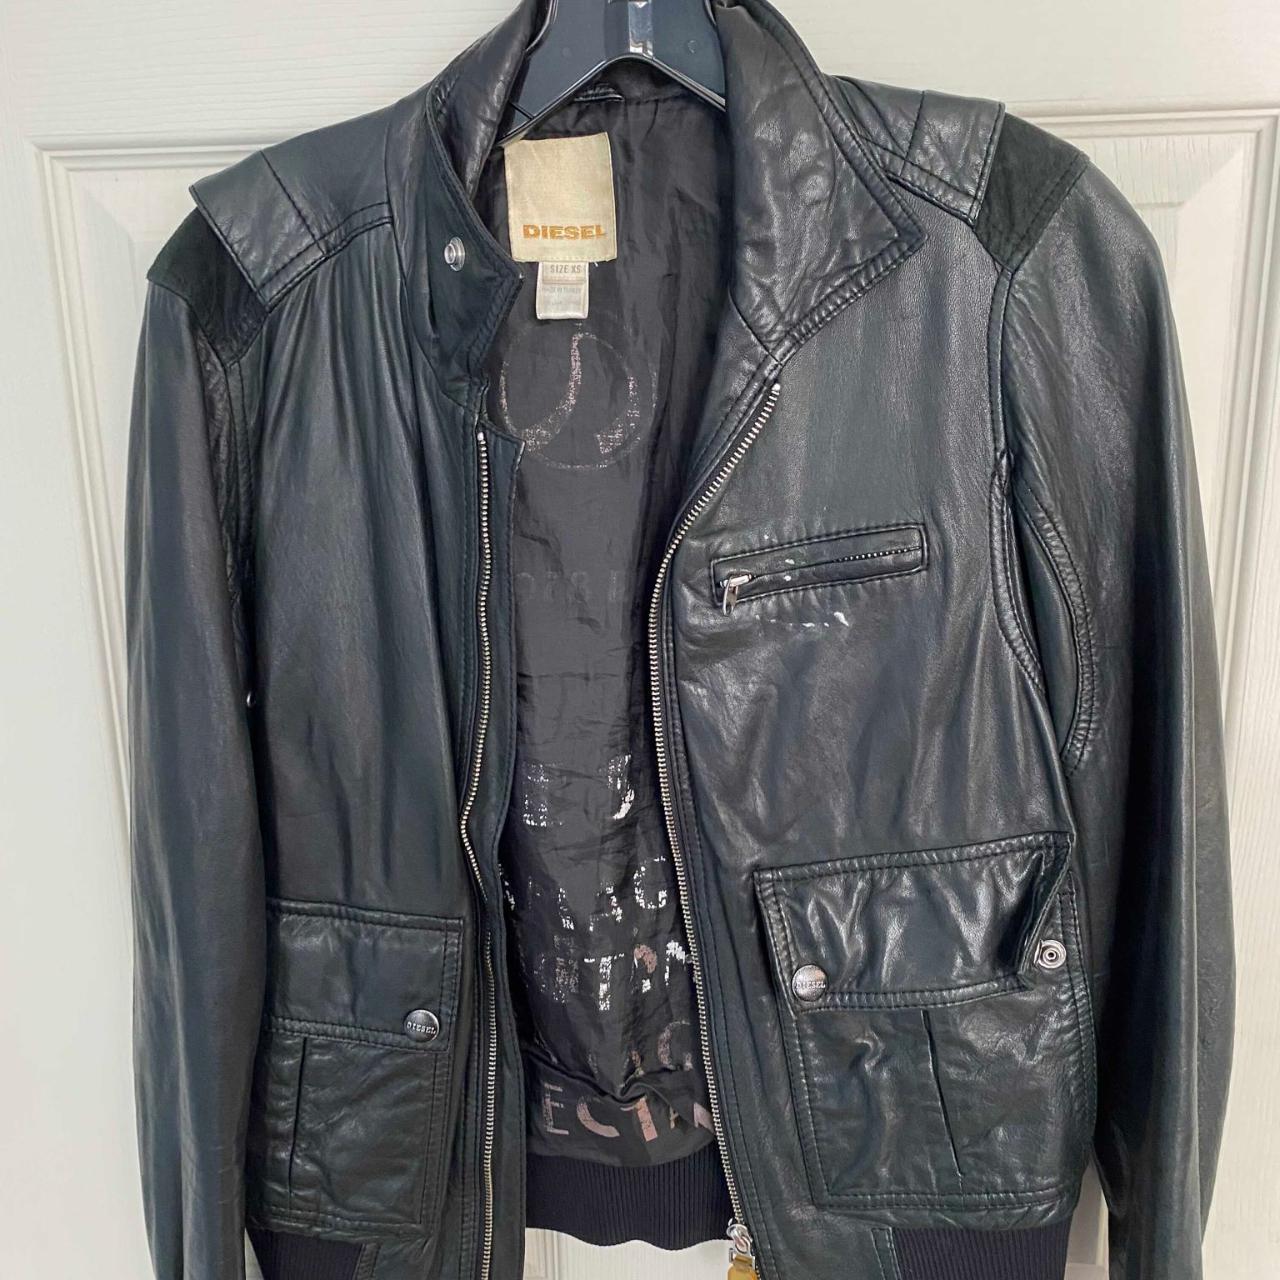 Vintage Diesel Leather Bomber Jacket In good used... - Depop